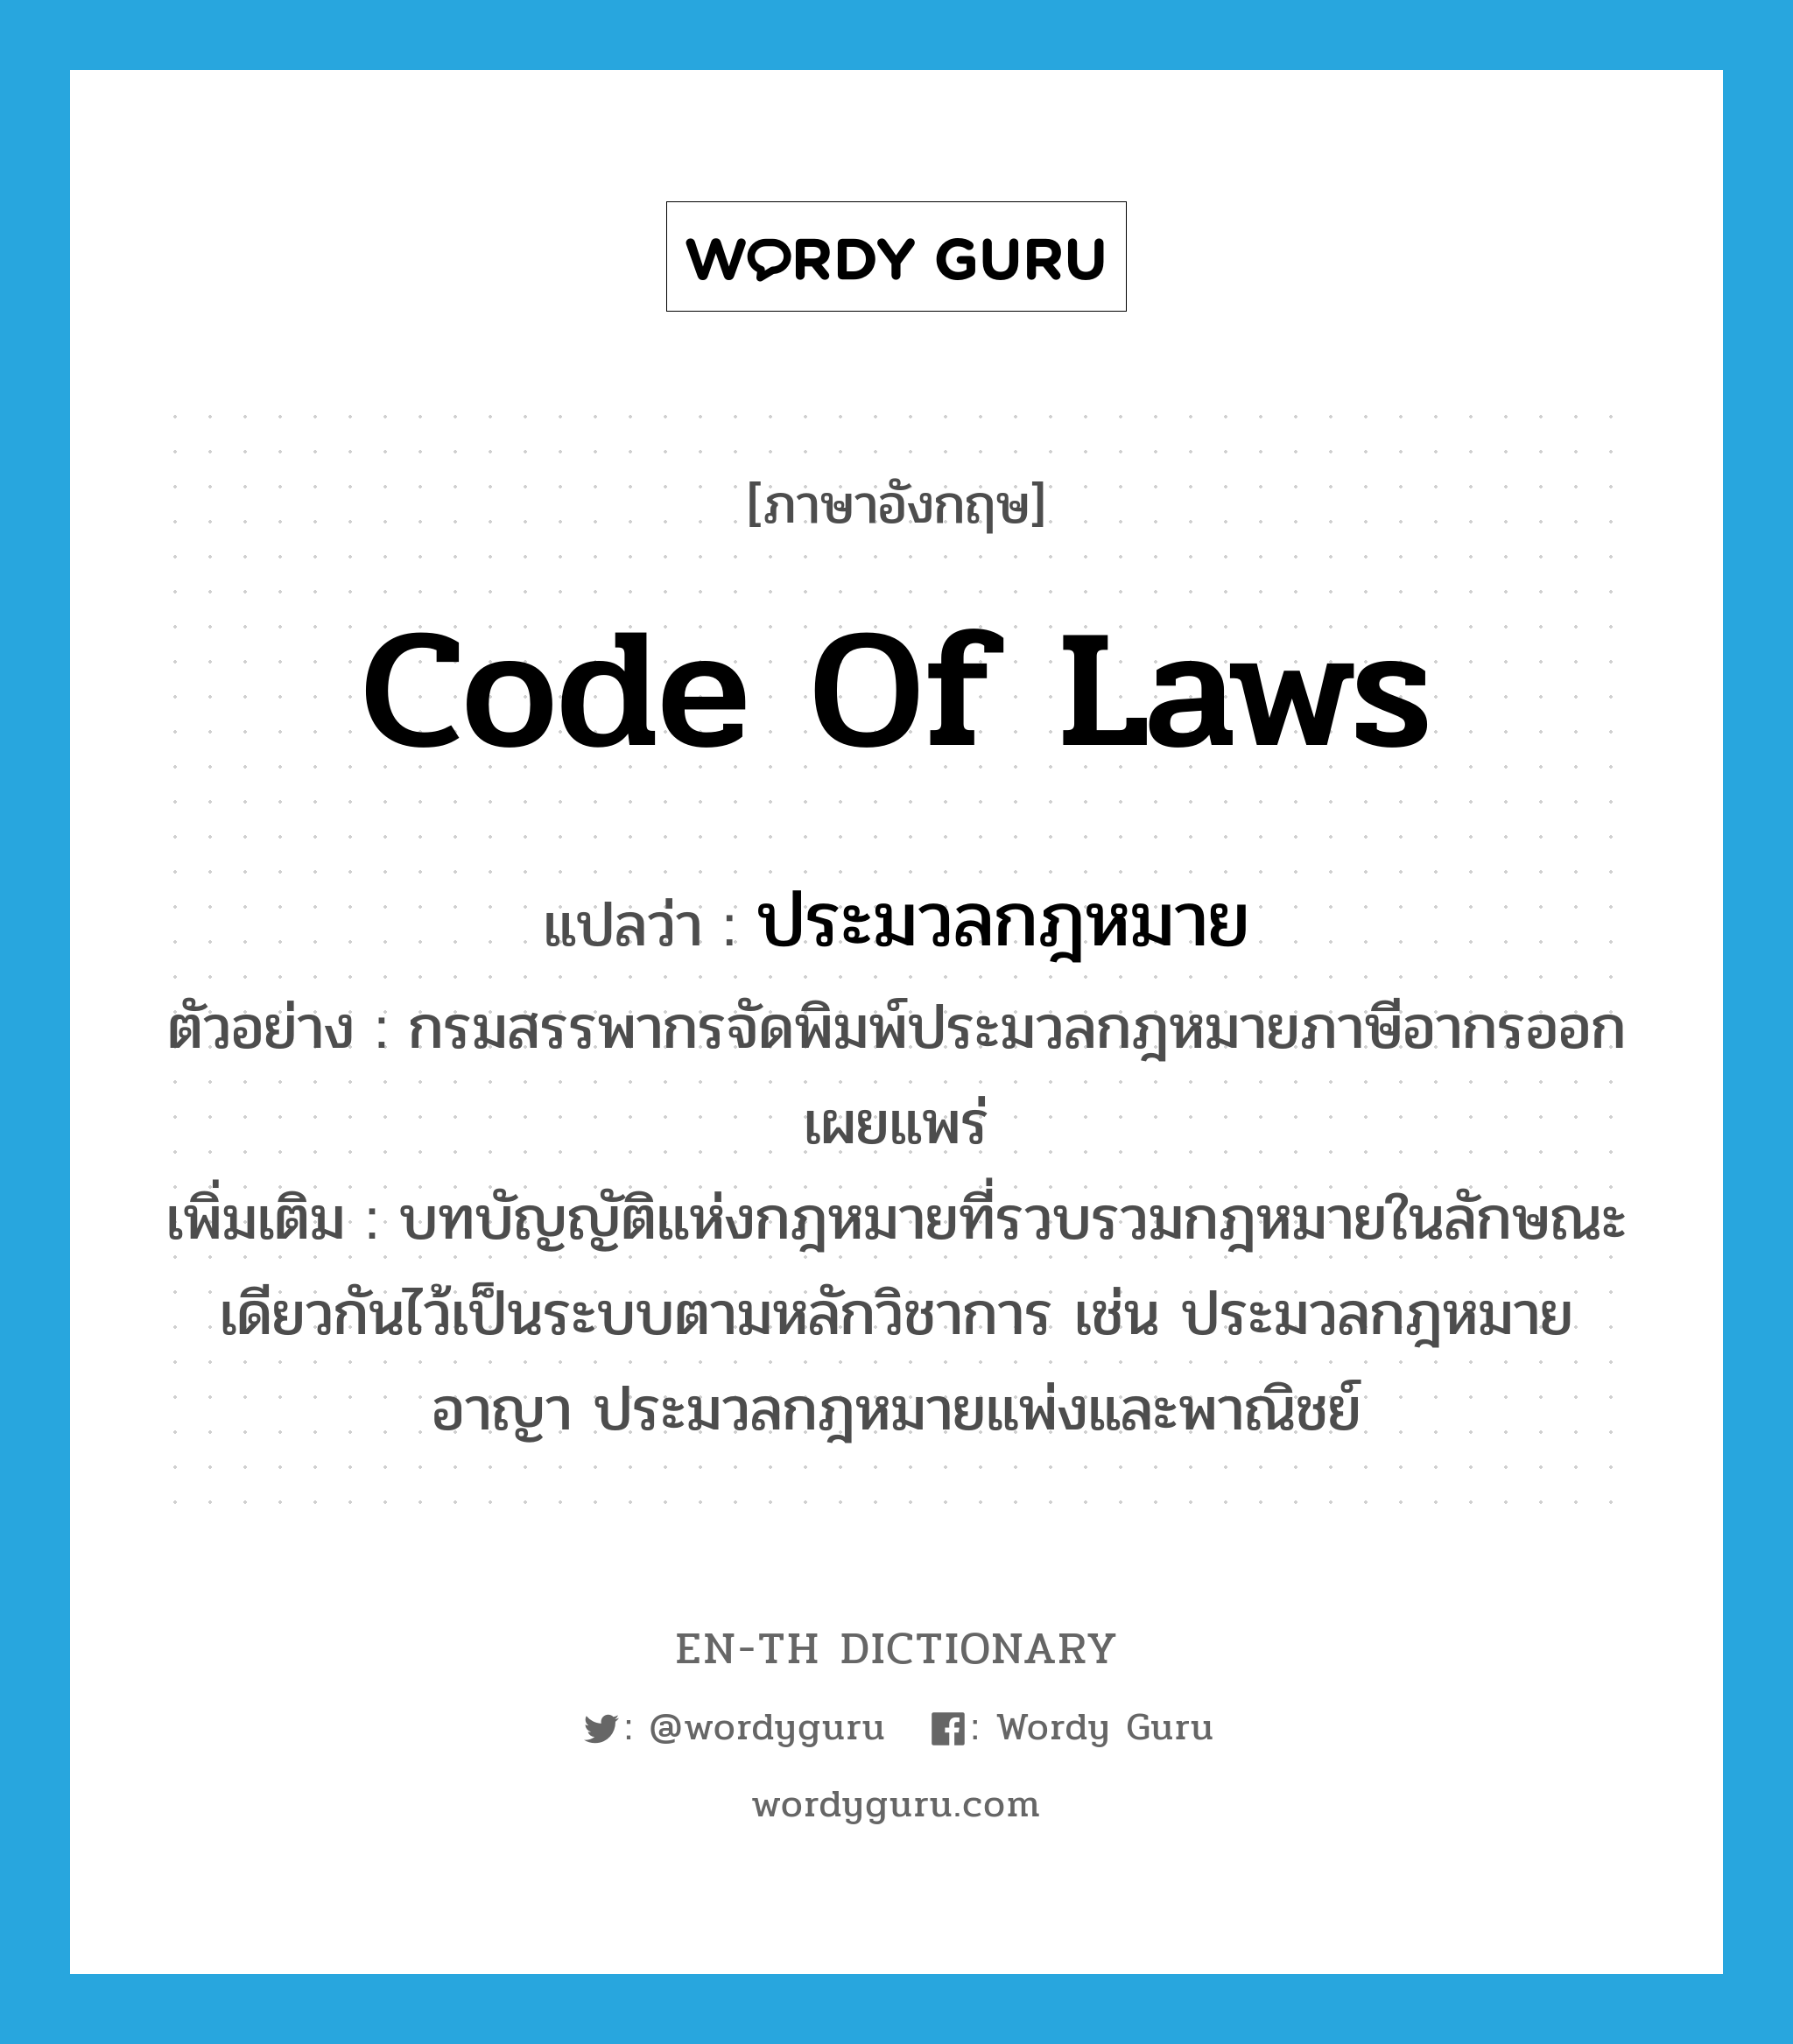 code of laws แปลว่า?, คำศัพท์ภาษาอังกฤษ code of laws แปลว่า ประมวลกฎหมาย ประเภท N ตัวอย่าง กรมสรรพากรจัดพิมพ์ประมวลกฎหมายภาษีอากรออกเผยแพร่ เพิ่มเติม บทบัญญัติแห่งกฎหมายที่รวบรวมกฎหมายในลักษณะเดียวกันไว้เป็นระบบตามหลักวิชาการ เช่น ประมวลกฎหมายอาญา ประมวลกฎหมายแพ่งและพาณิชย์ หมวด N